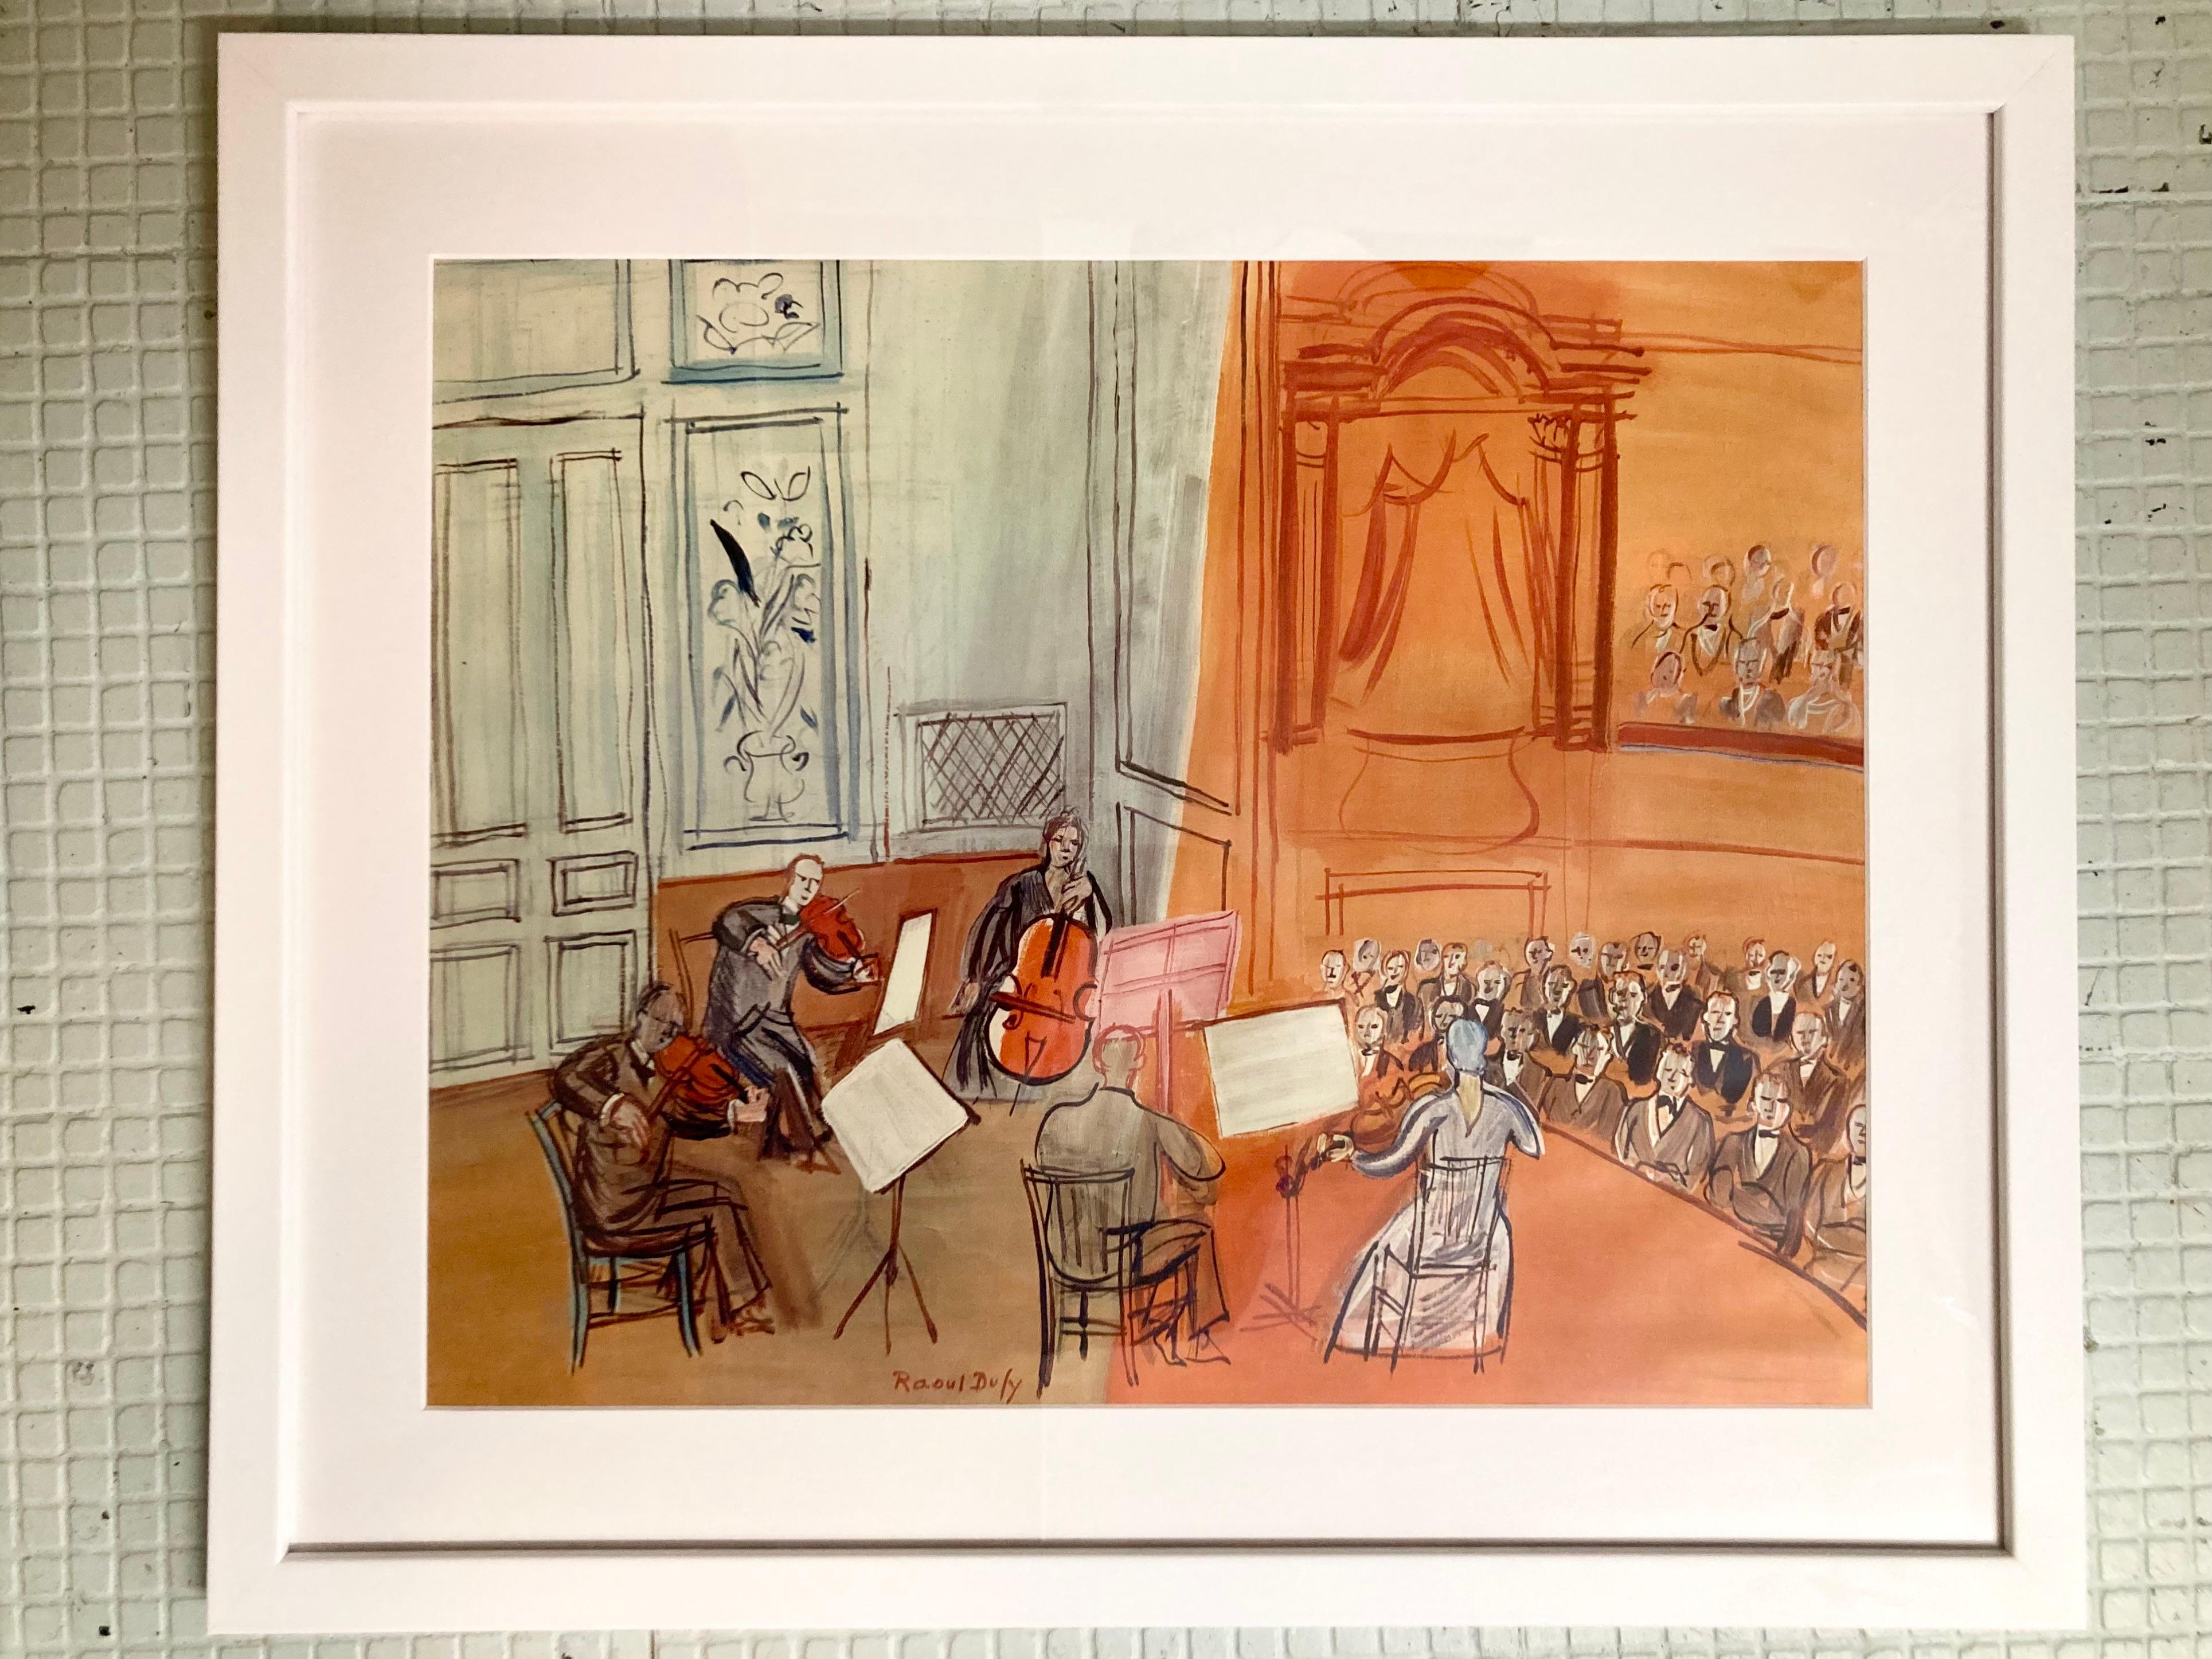 Schöne Raoul Dufy Konzertlithographie aus dem Nachlass von Tony Duquette. Eine tolle Ergänzung für Ihr französisch inspiriertes Interieur.

Abmessungen des Bildes: 21.5